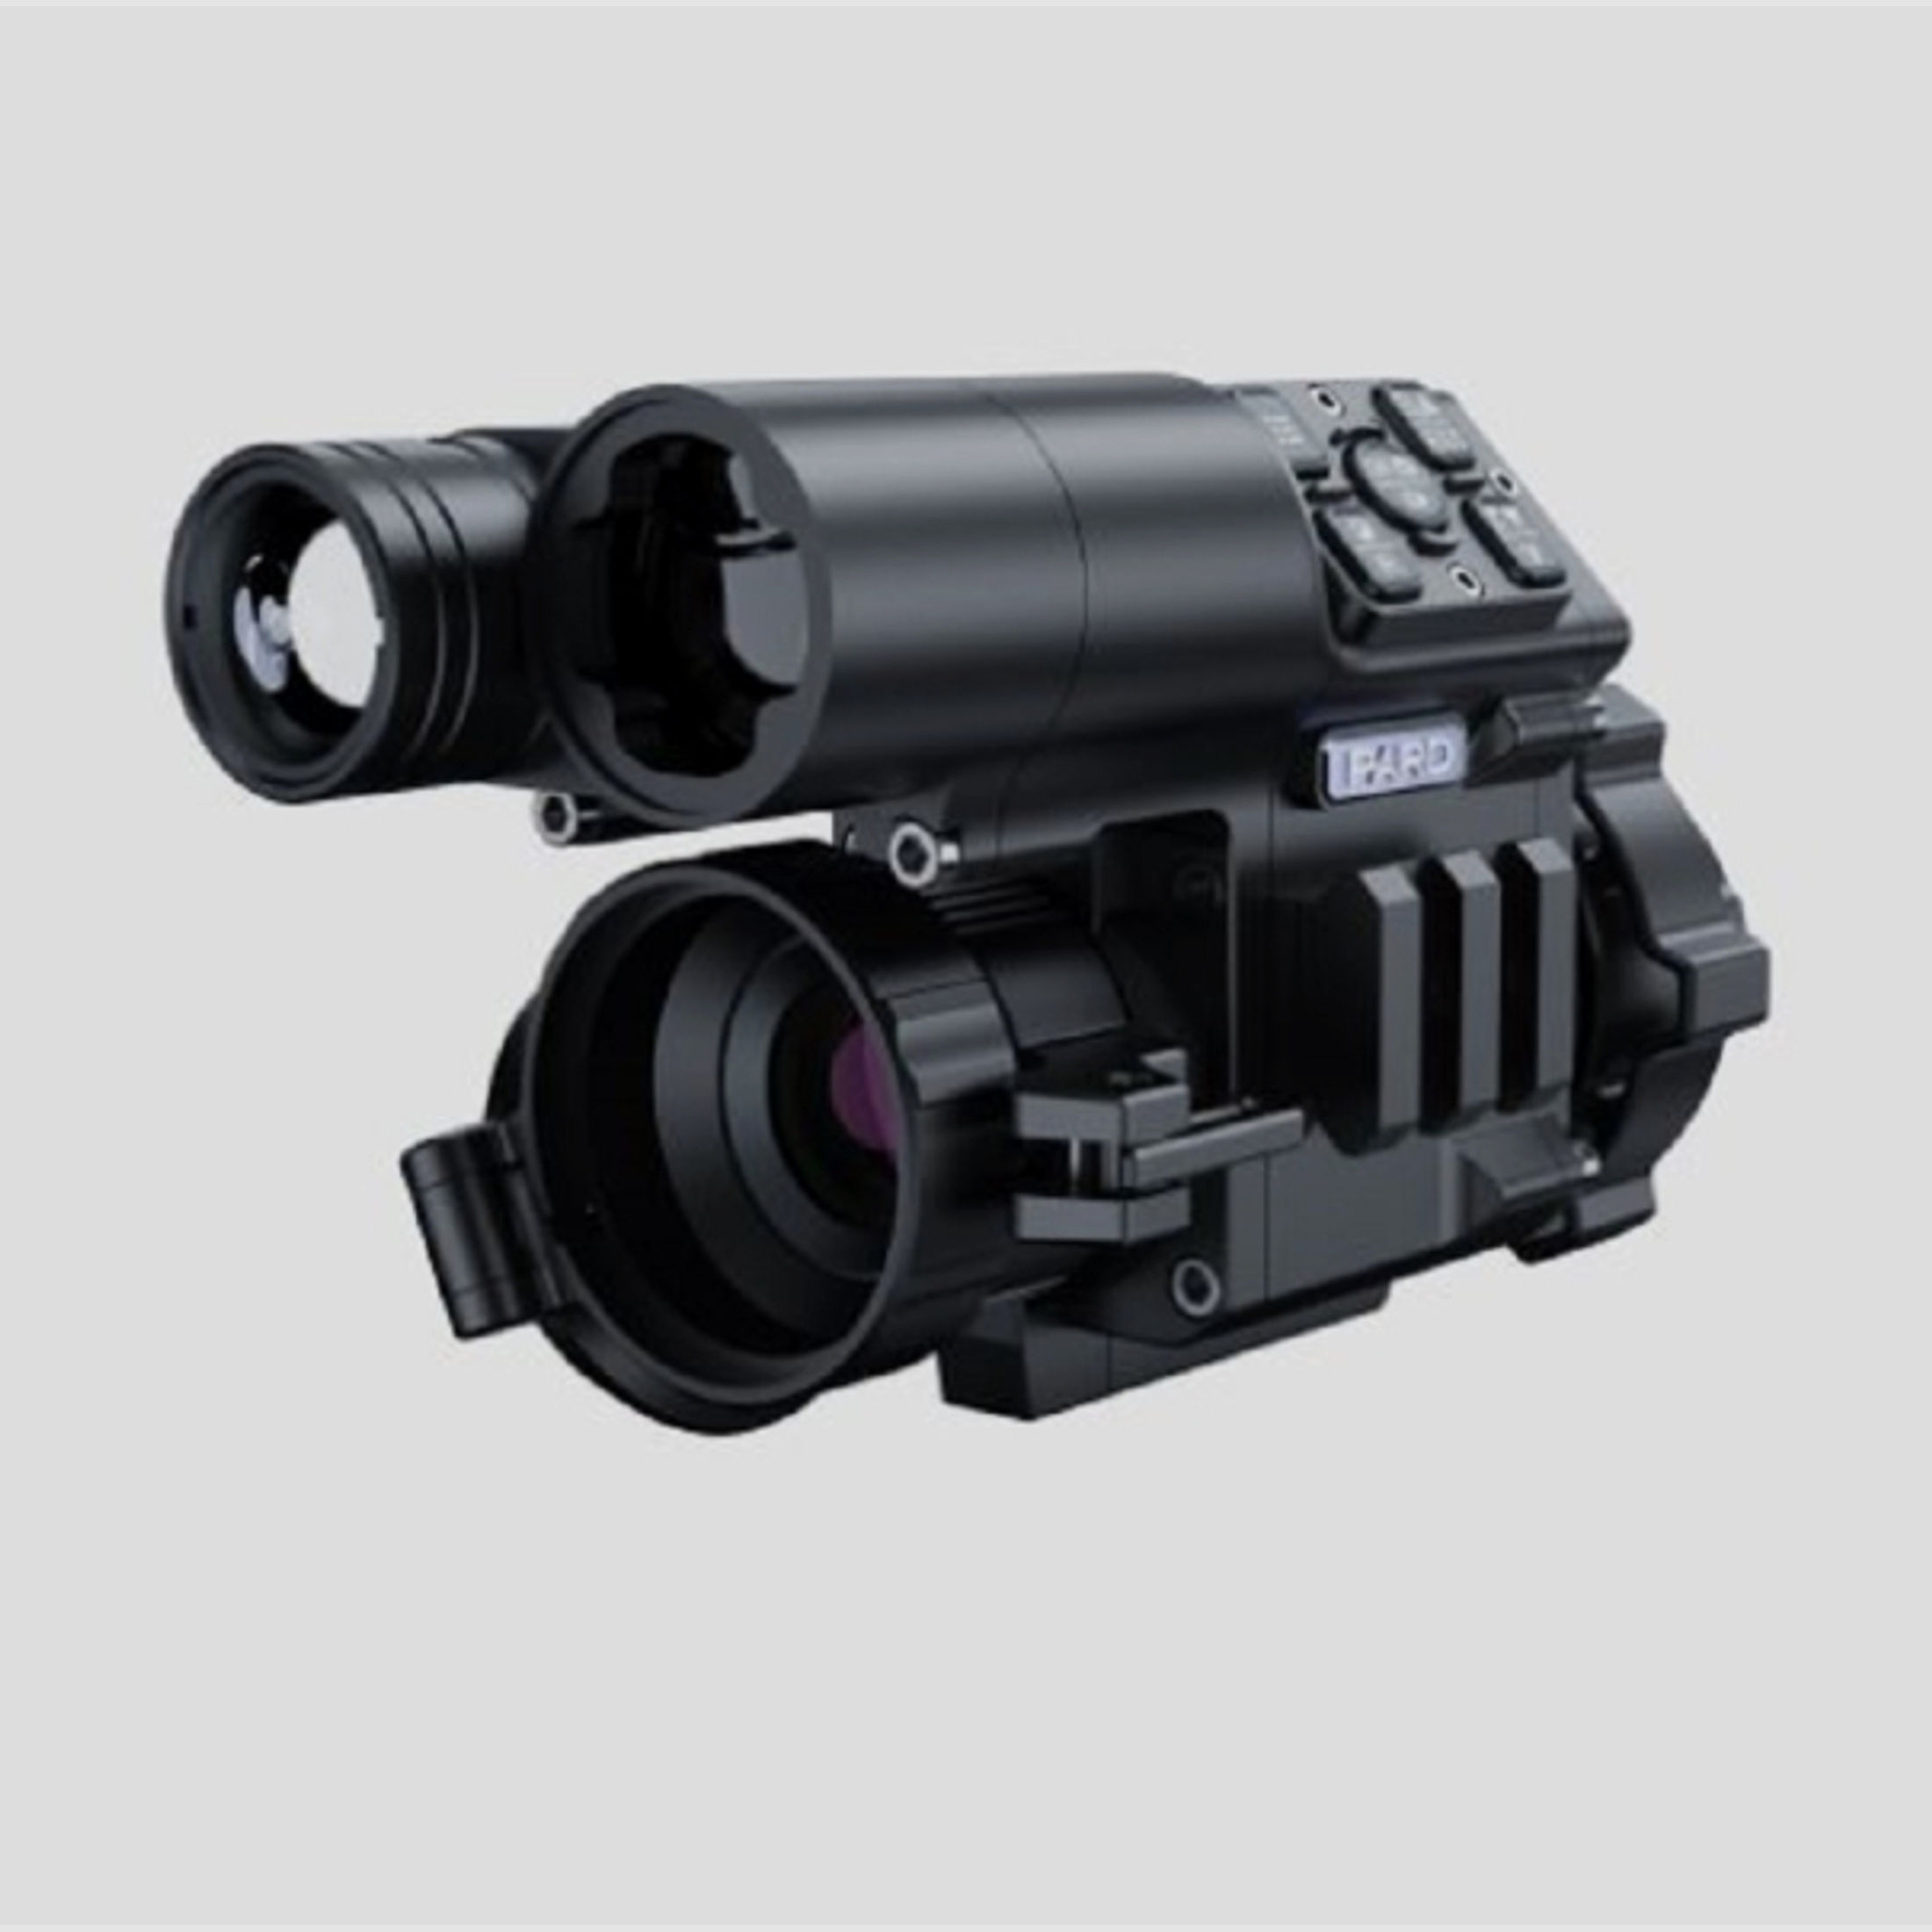 ANGEBOT: Pard - Nachtsicht-Vorsatzgerät NV FD1 940nm LRF - Komplettset mit Rusan Adapter & Eye-Piece